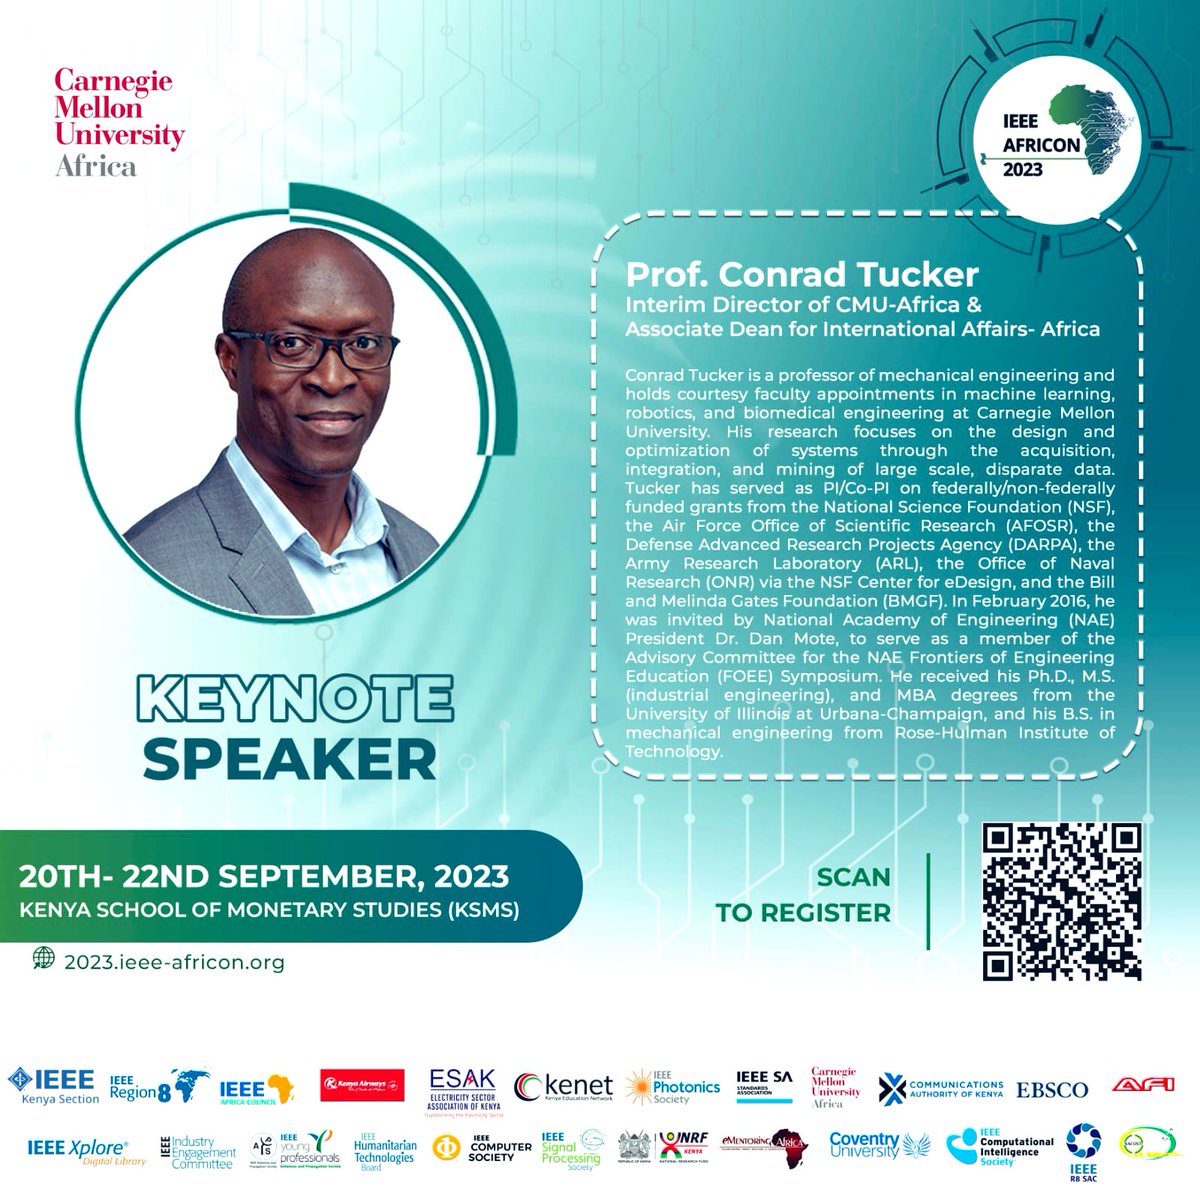 The interim Director of @cmu_africa Prof. Conrad Tucker will give a keynote  address at #africon2023 @ieeeafricon @IEEEPES_Kenya @IEEEKenyaComSoc @IEEEPhotonics